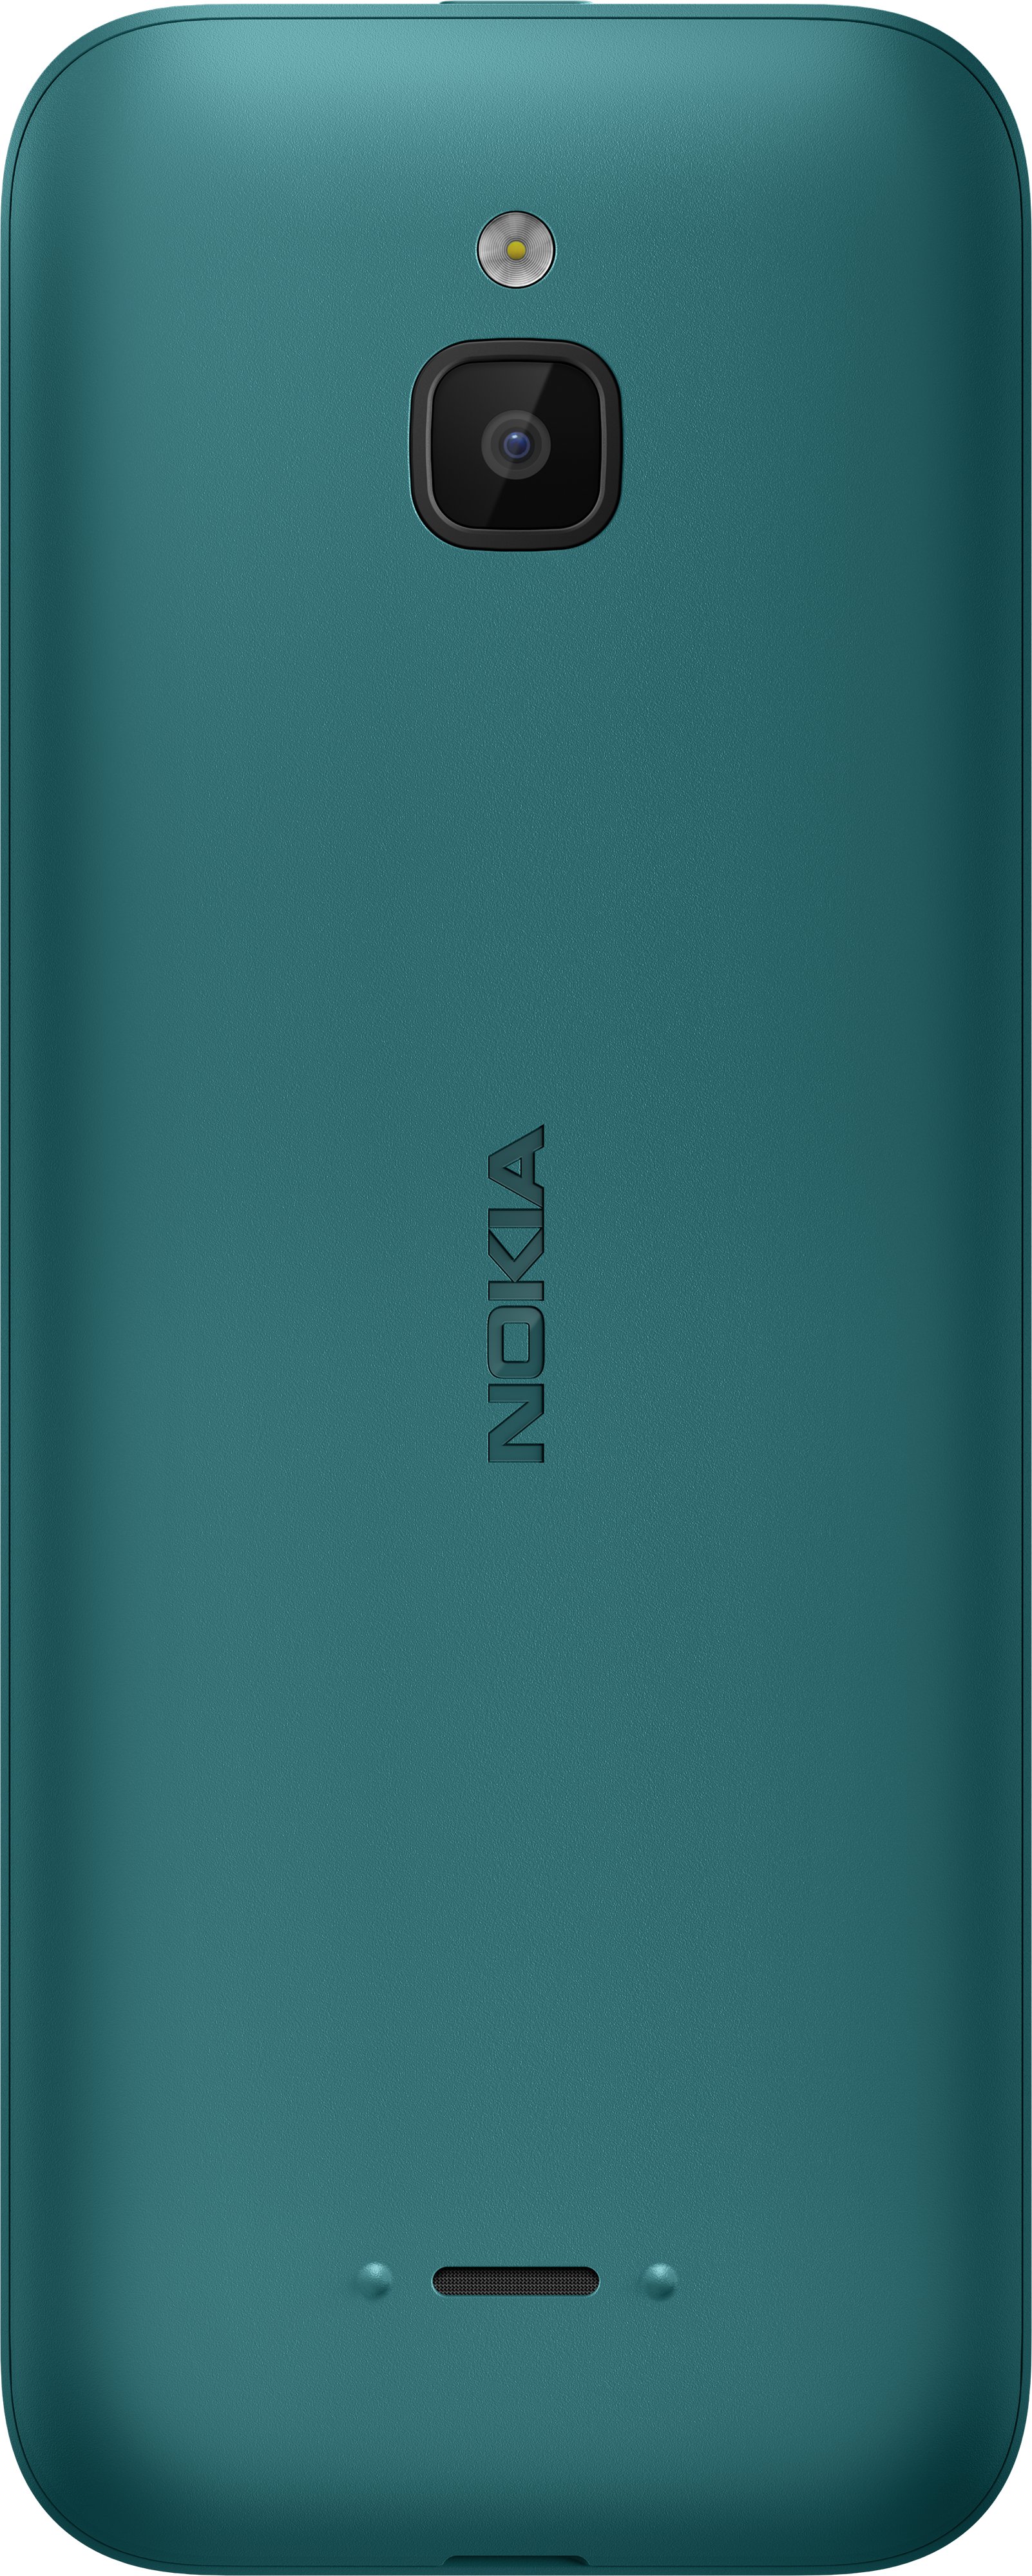 Nokia 6300 4G en Celulares Costa Rica - Conectividad y Durabilidad